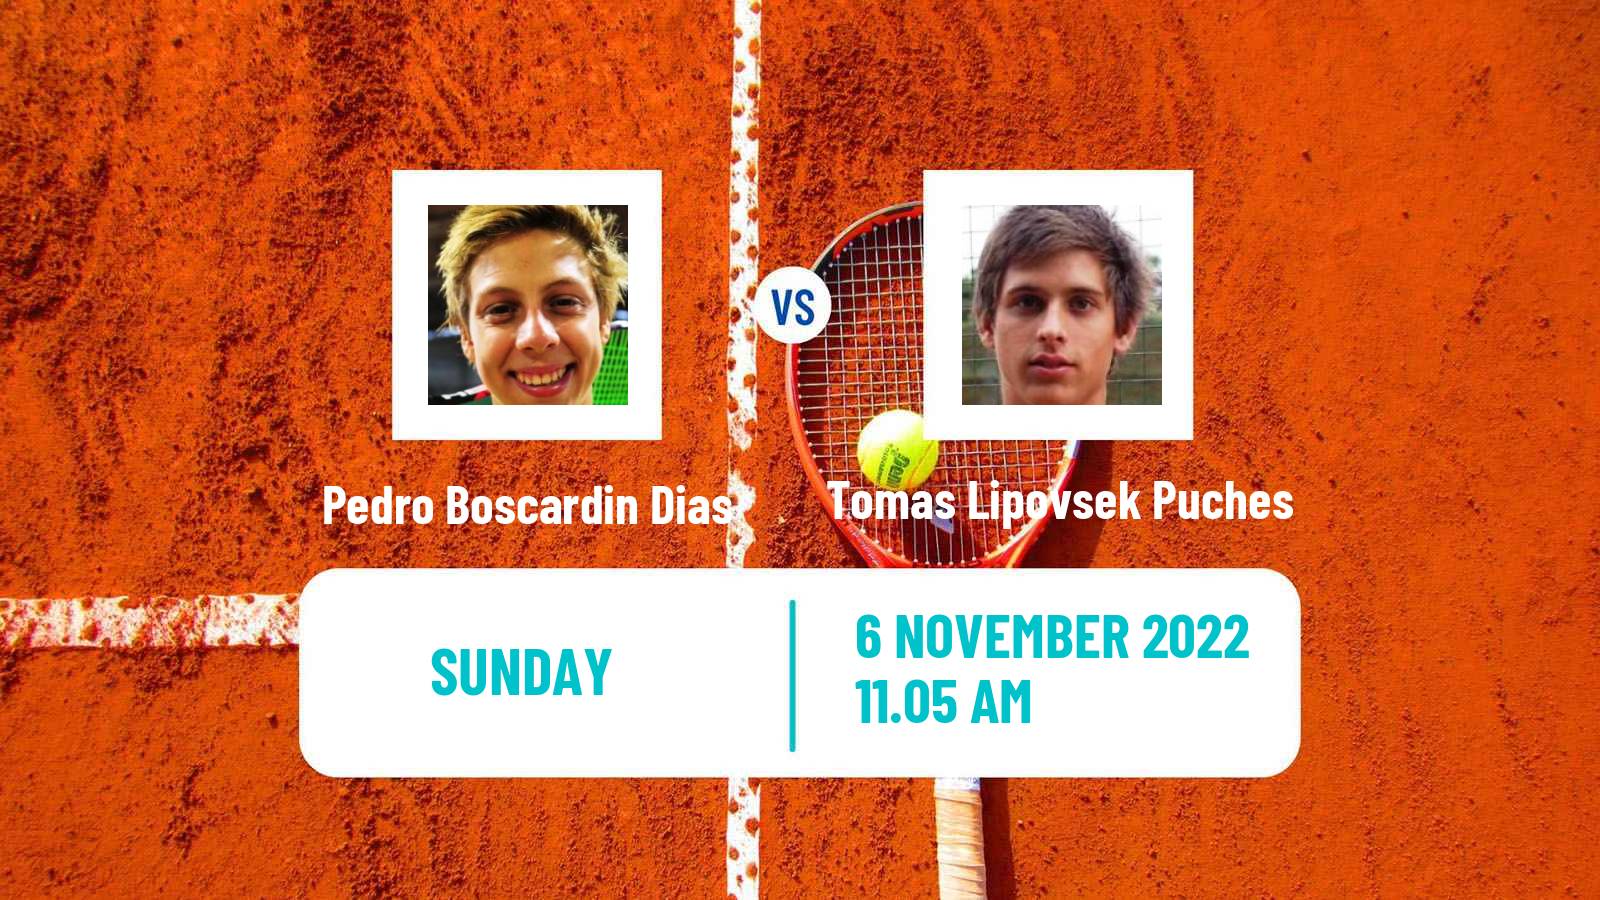 Tennis ATP Challenger Pedro Boscardin Dias - Tomas Lipovsek Puches